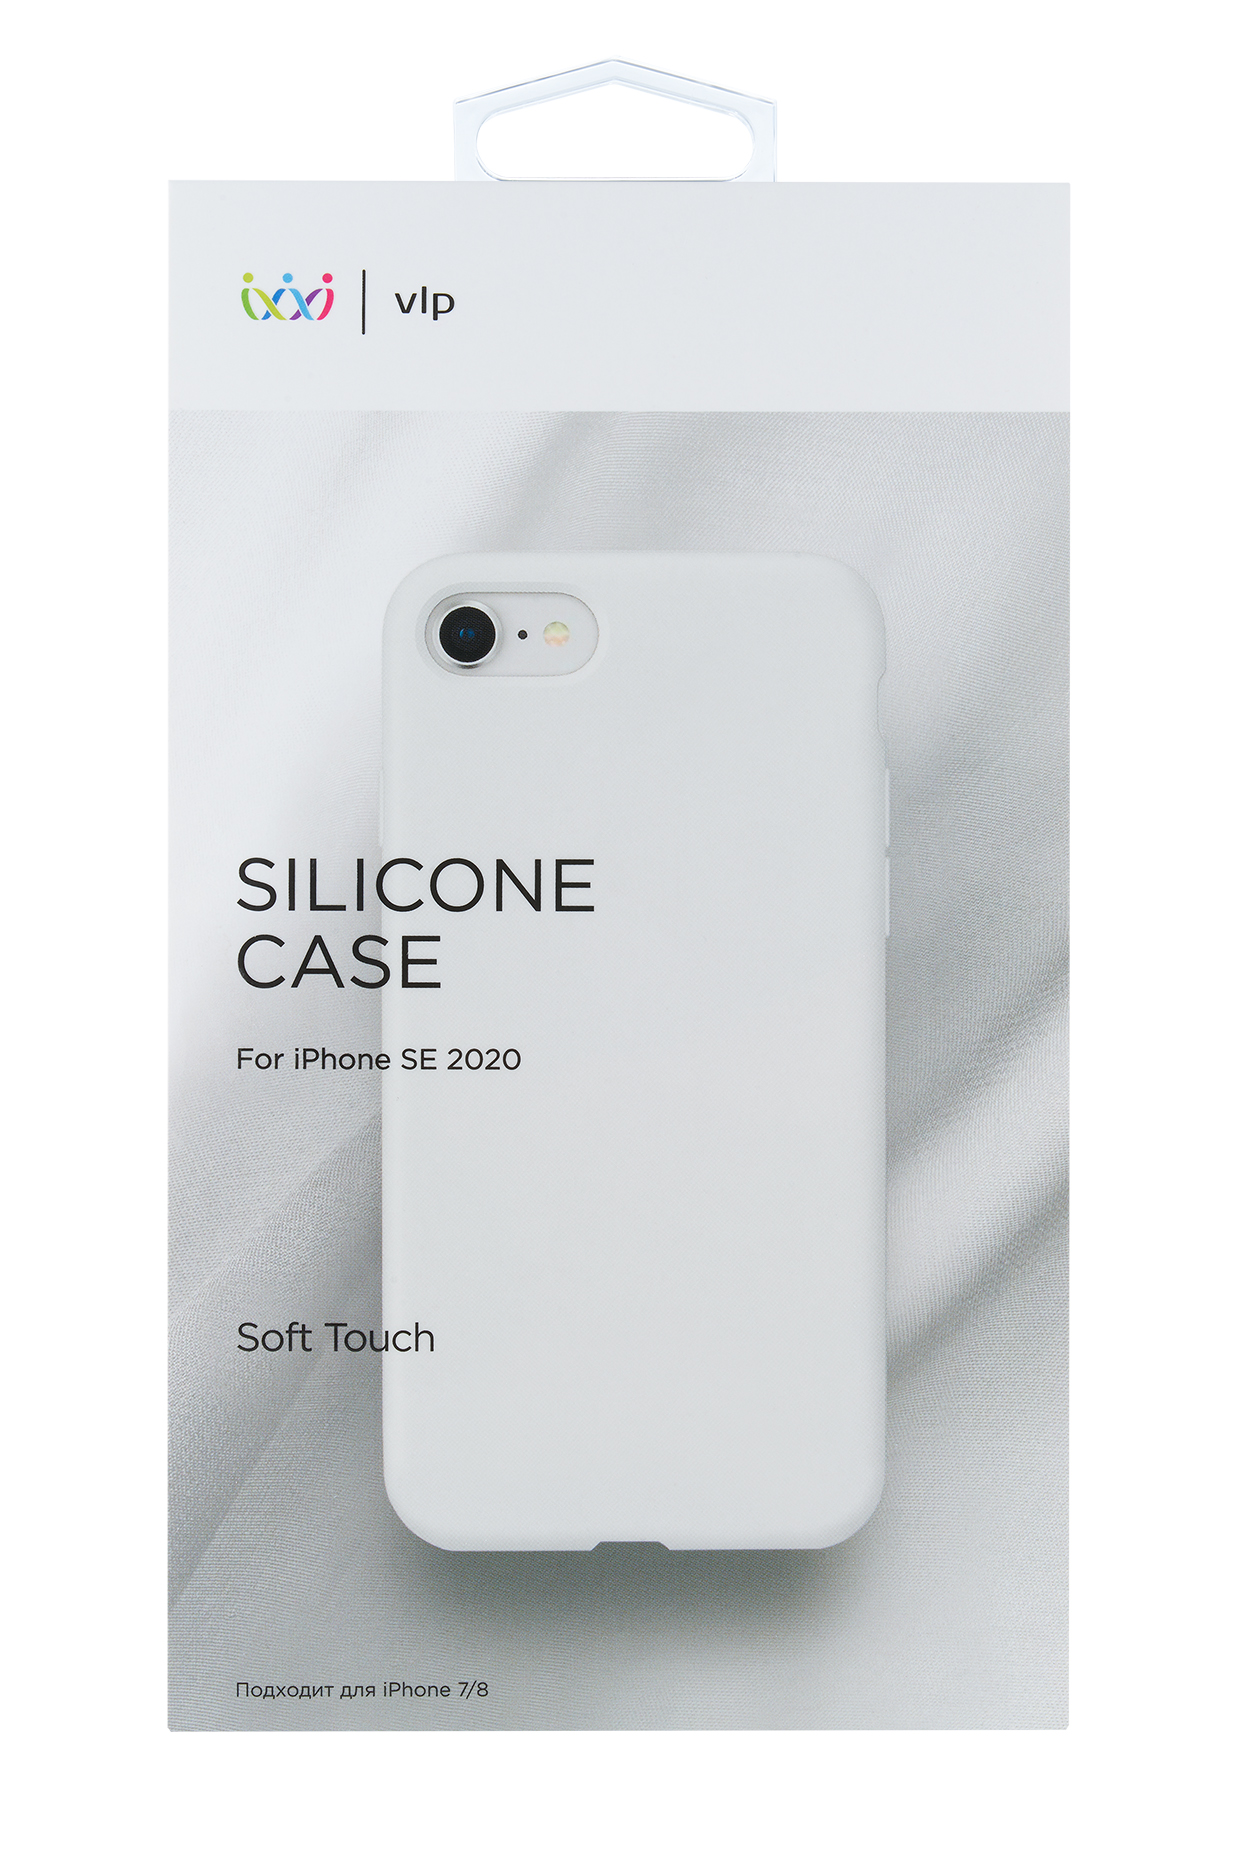 цена Чехол защитный VLP Silicone Сase для iPhone SE 2020, белый